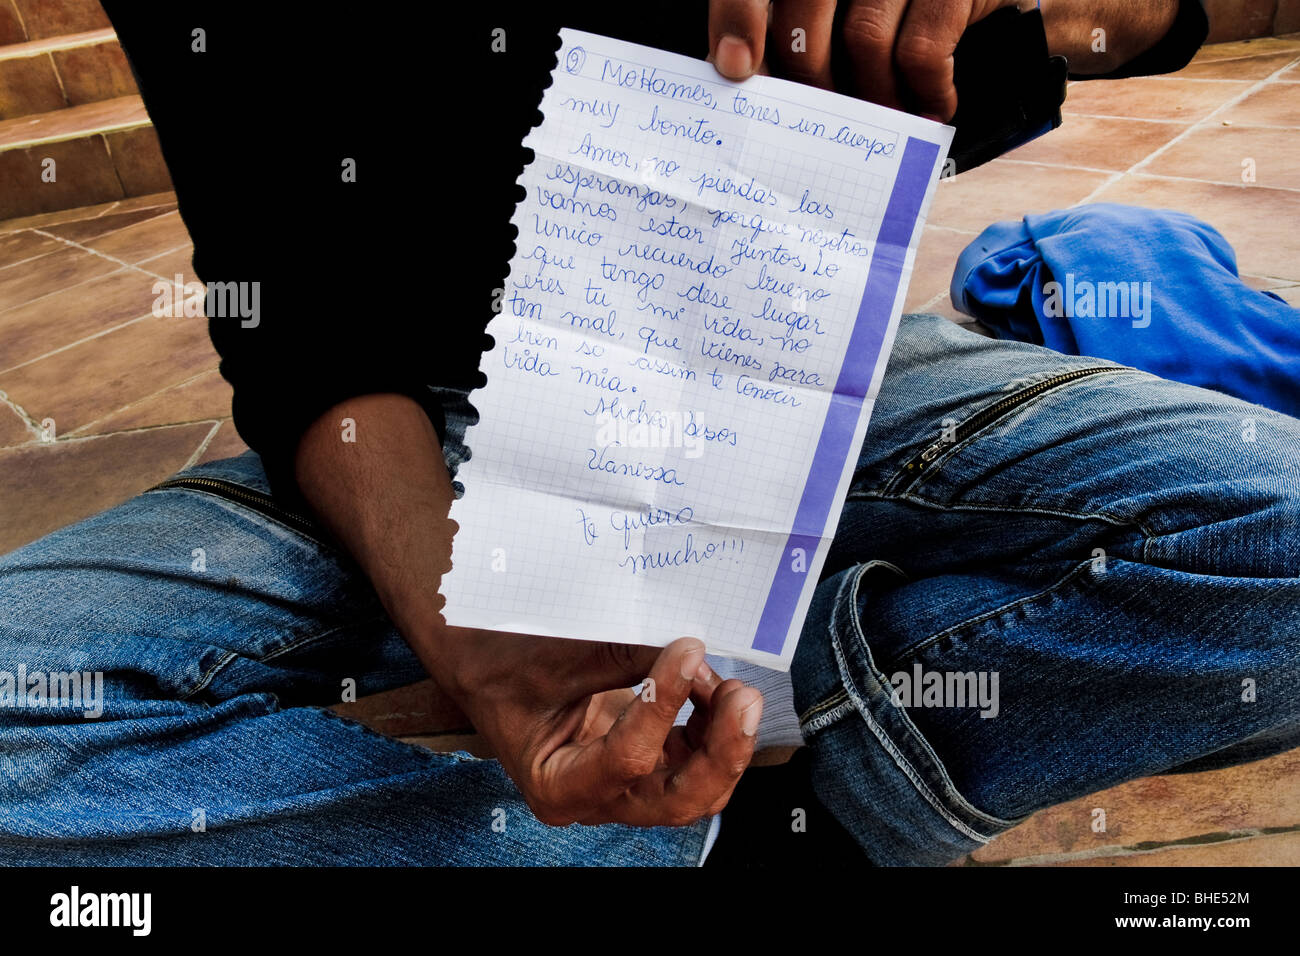 Ein marokkanischer Einwanderer zeigt einen Liebesbrief von seiner spanischen Freundin, Tanger, Marokko. Stockfoto